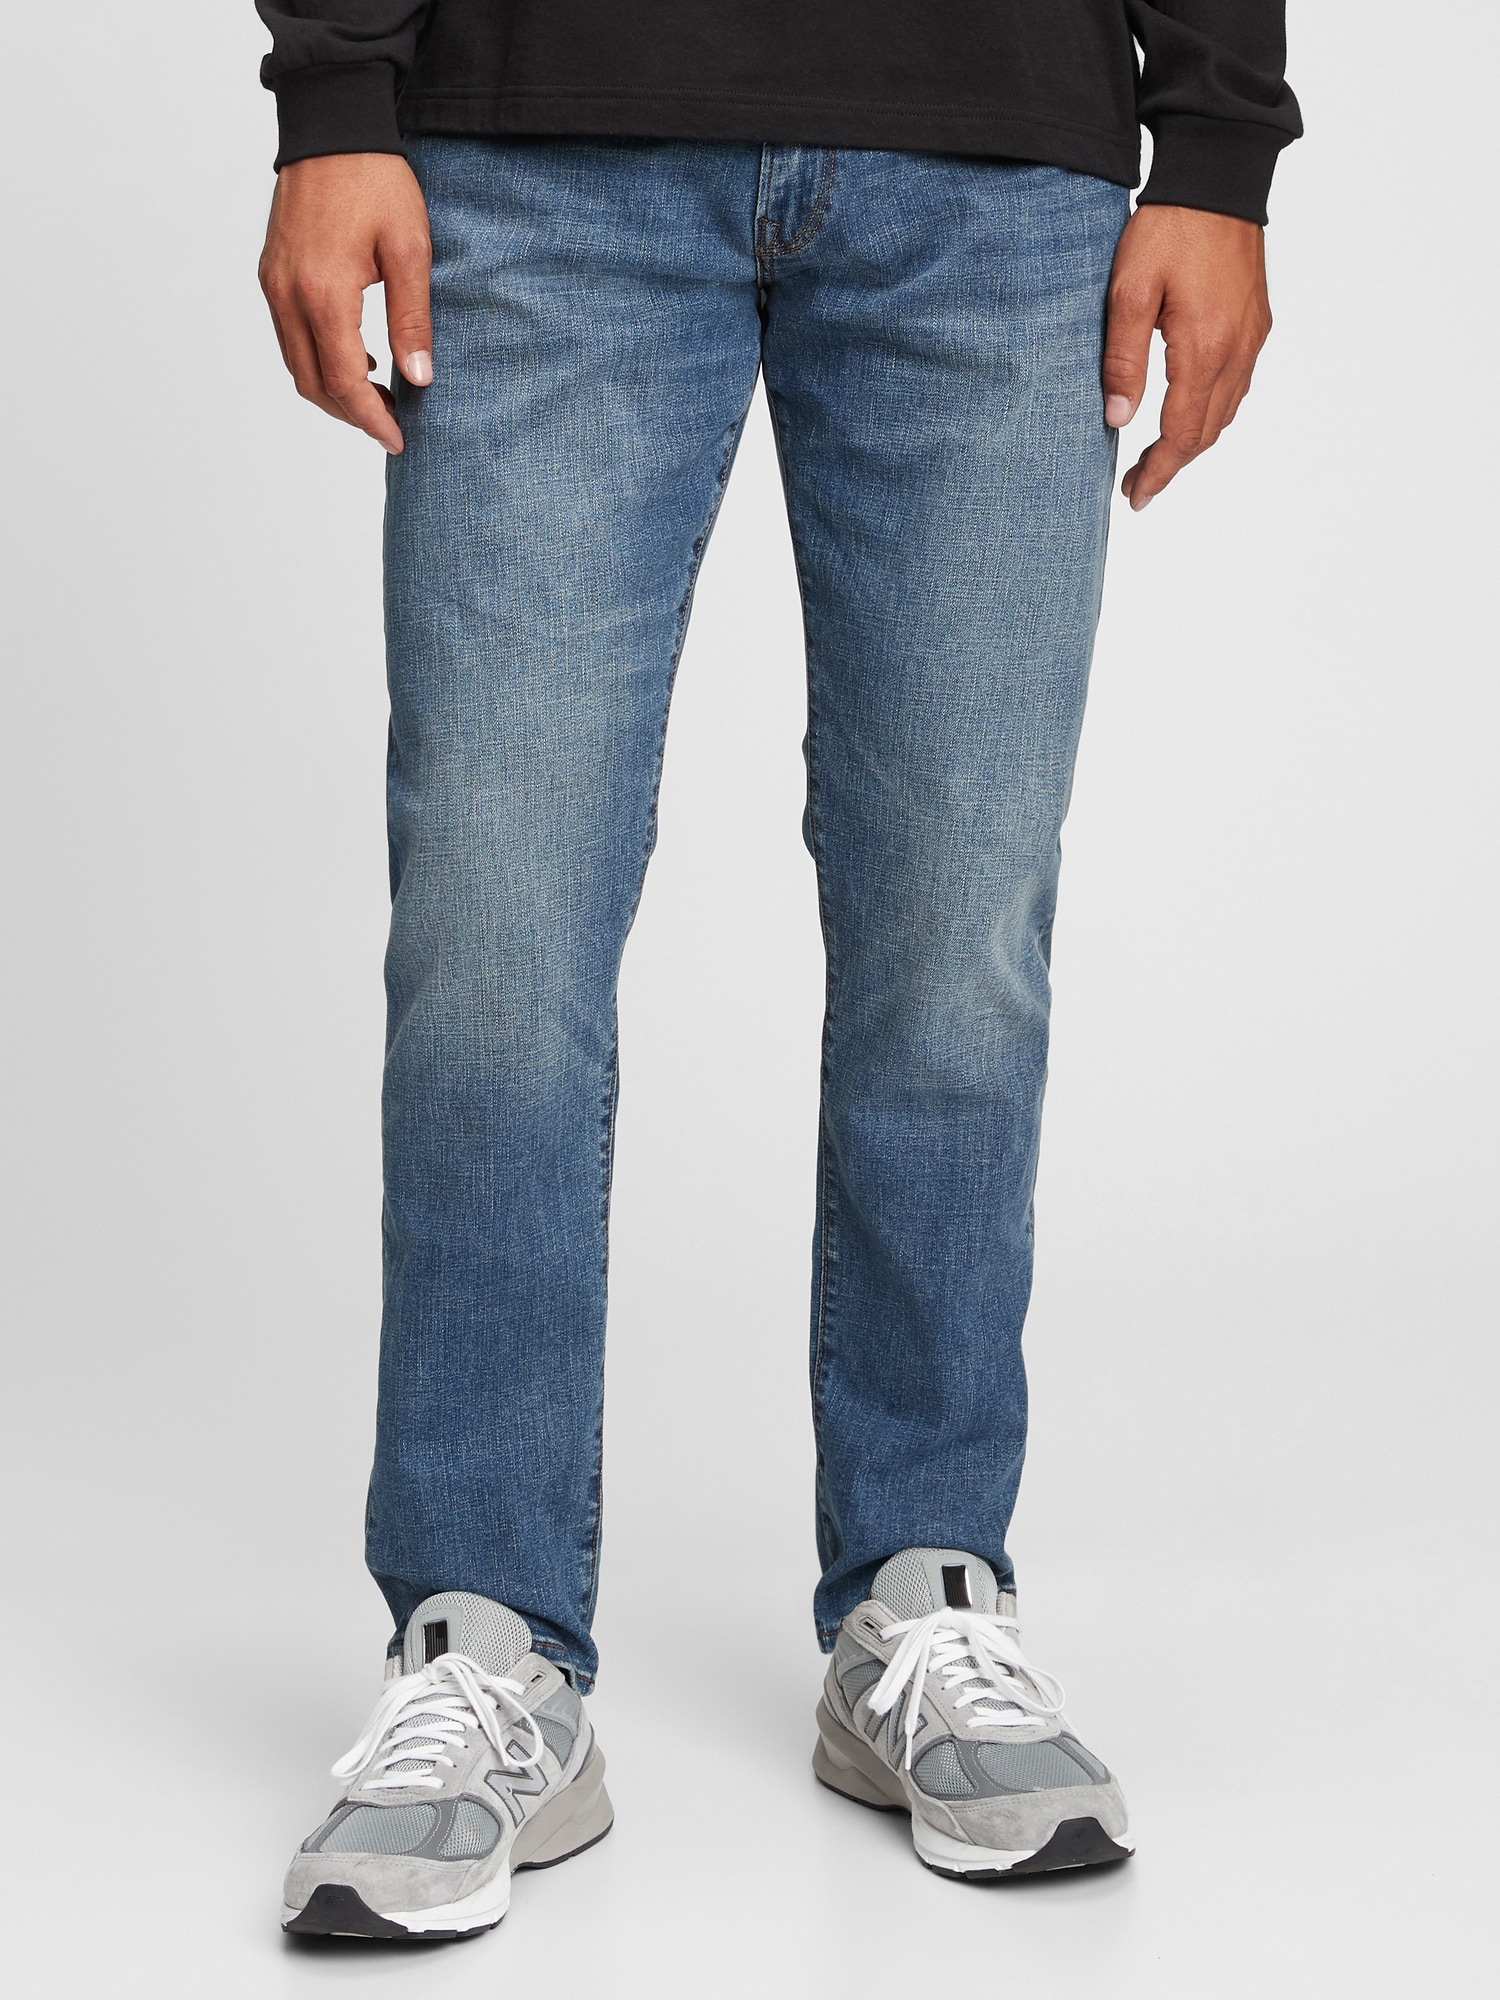 GAP, Jeans, Gap Jeans Mens Size 32 X 32